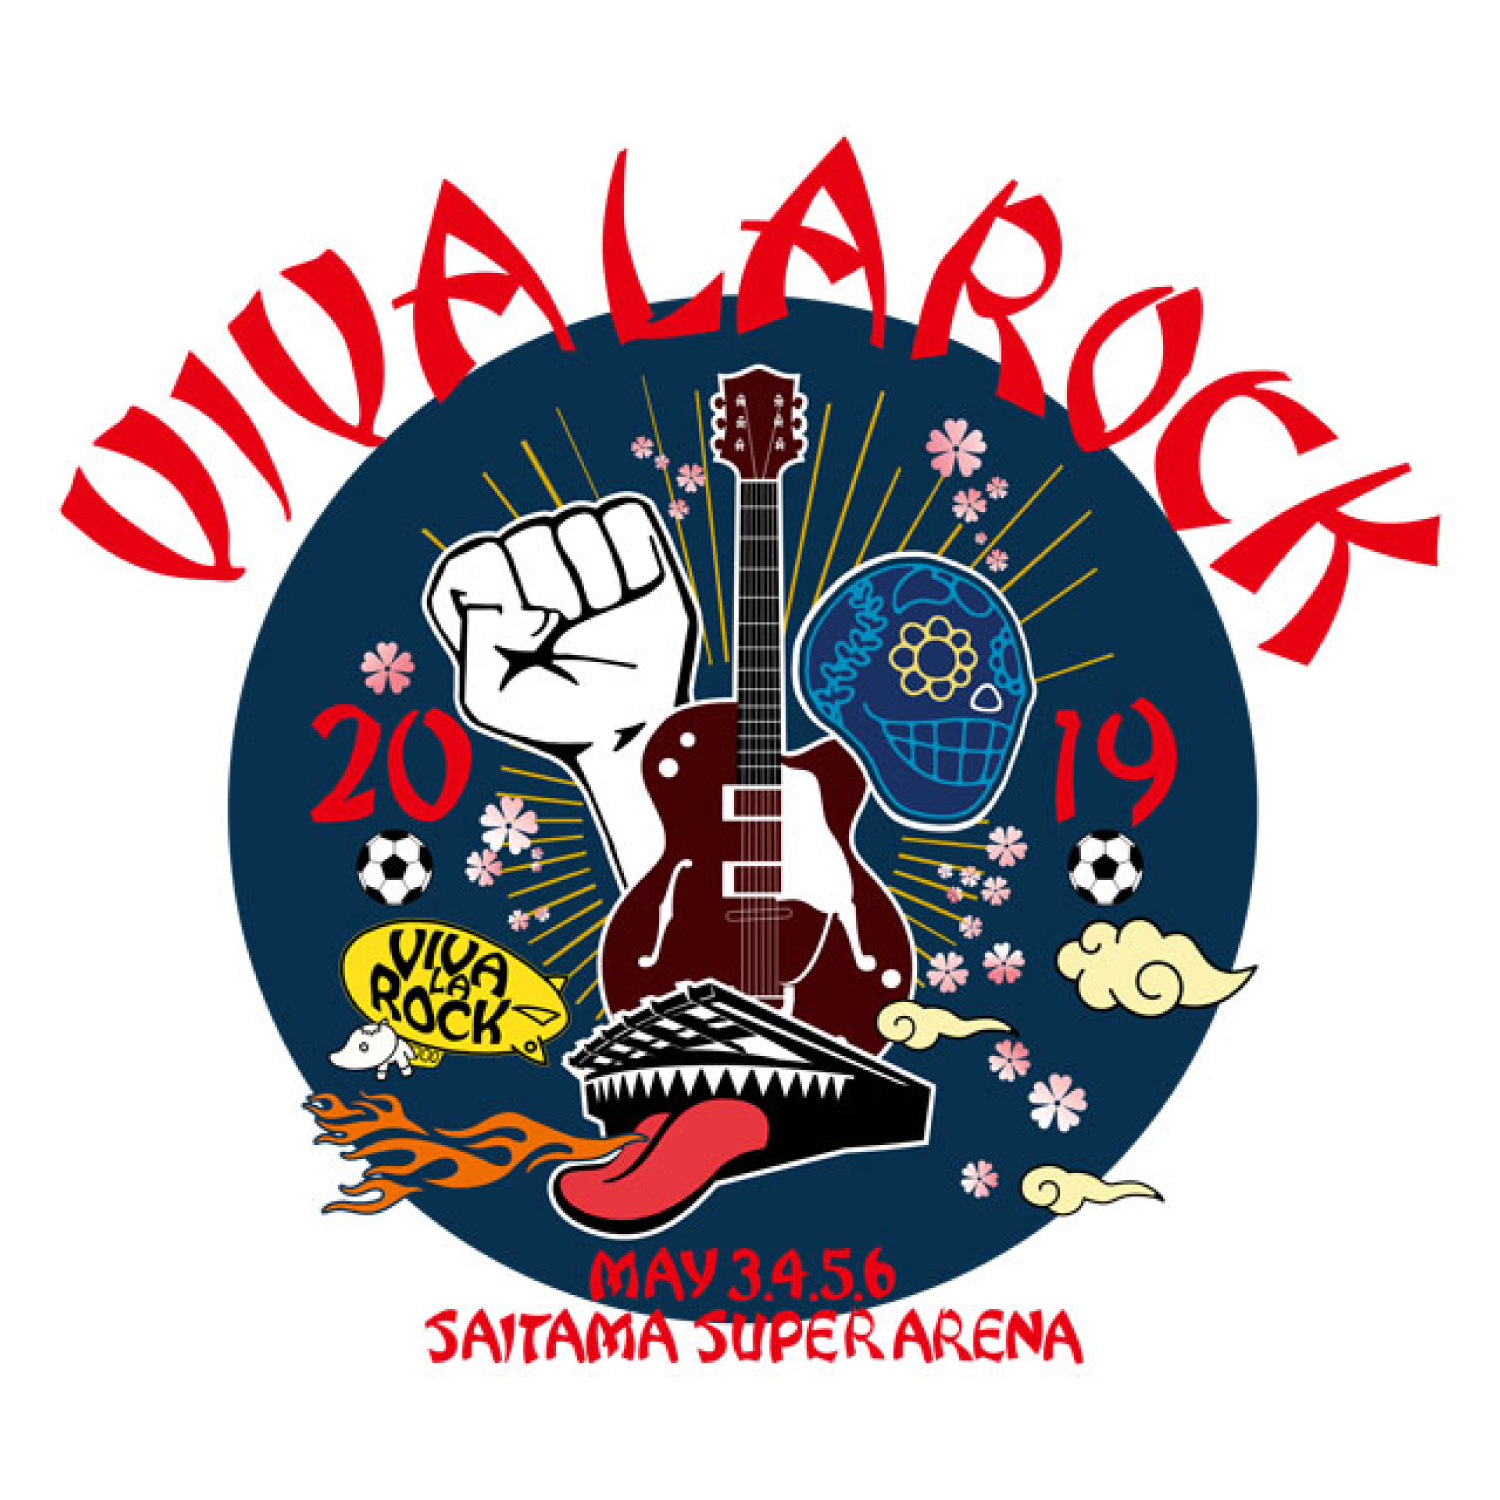 【埼玉】VIVA LA ROCK 2019 (さいたまスーパーアリーナ)